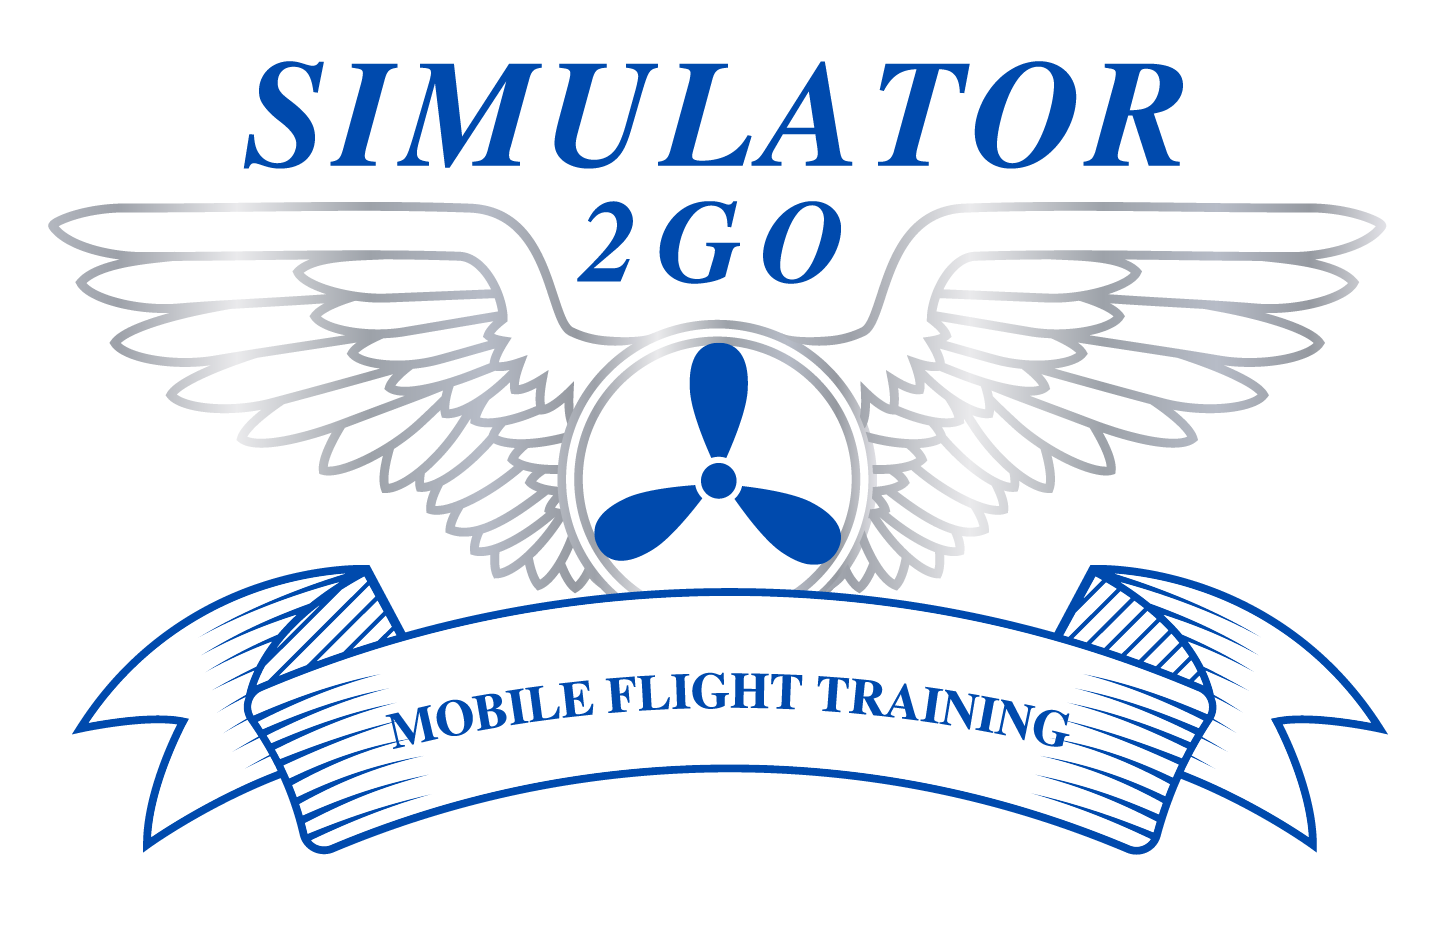 Simulator 2 Go